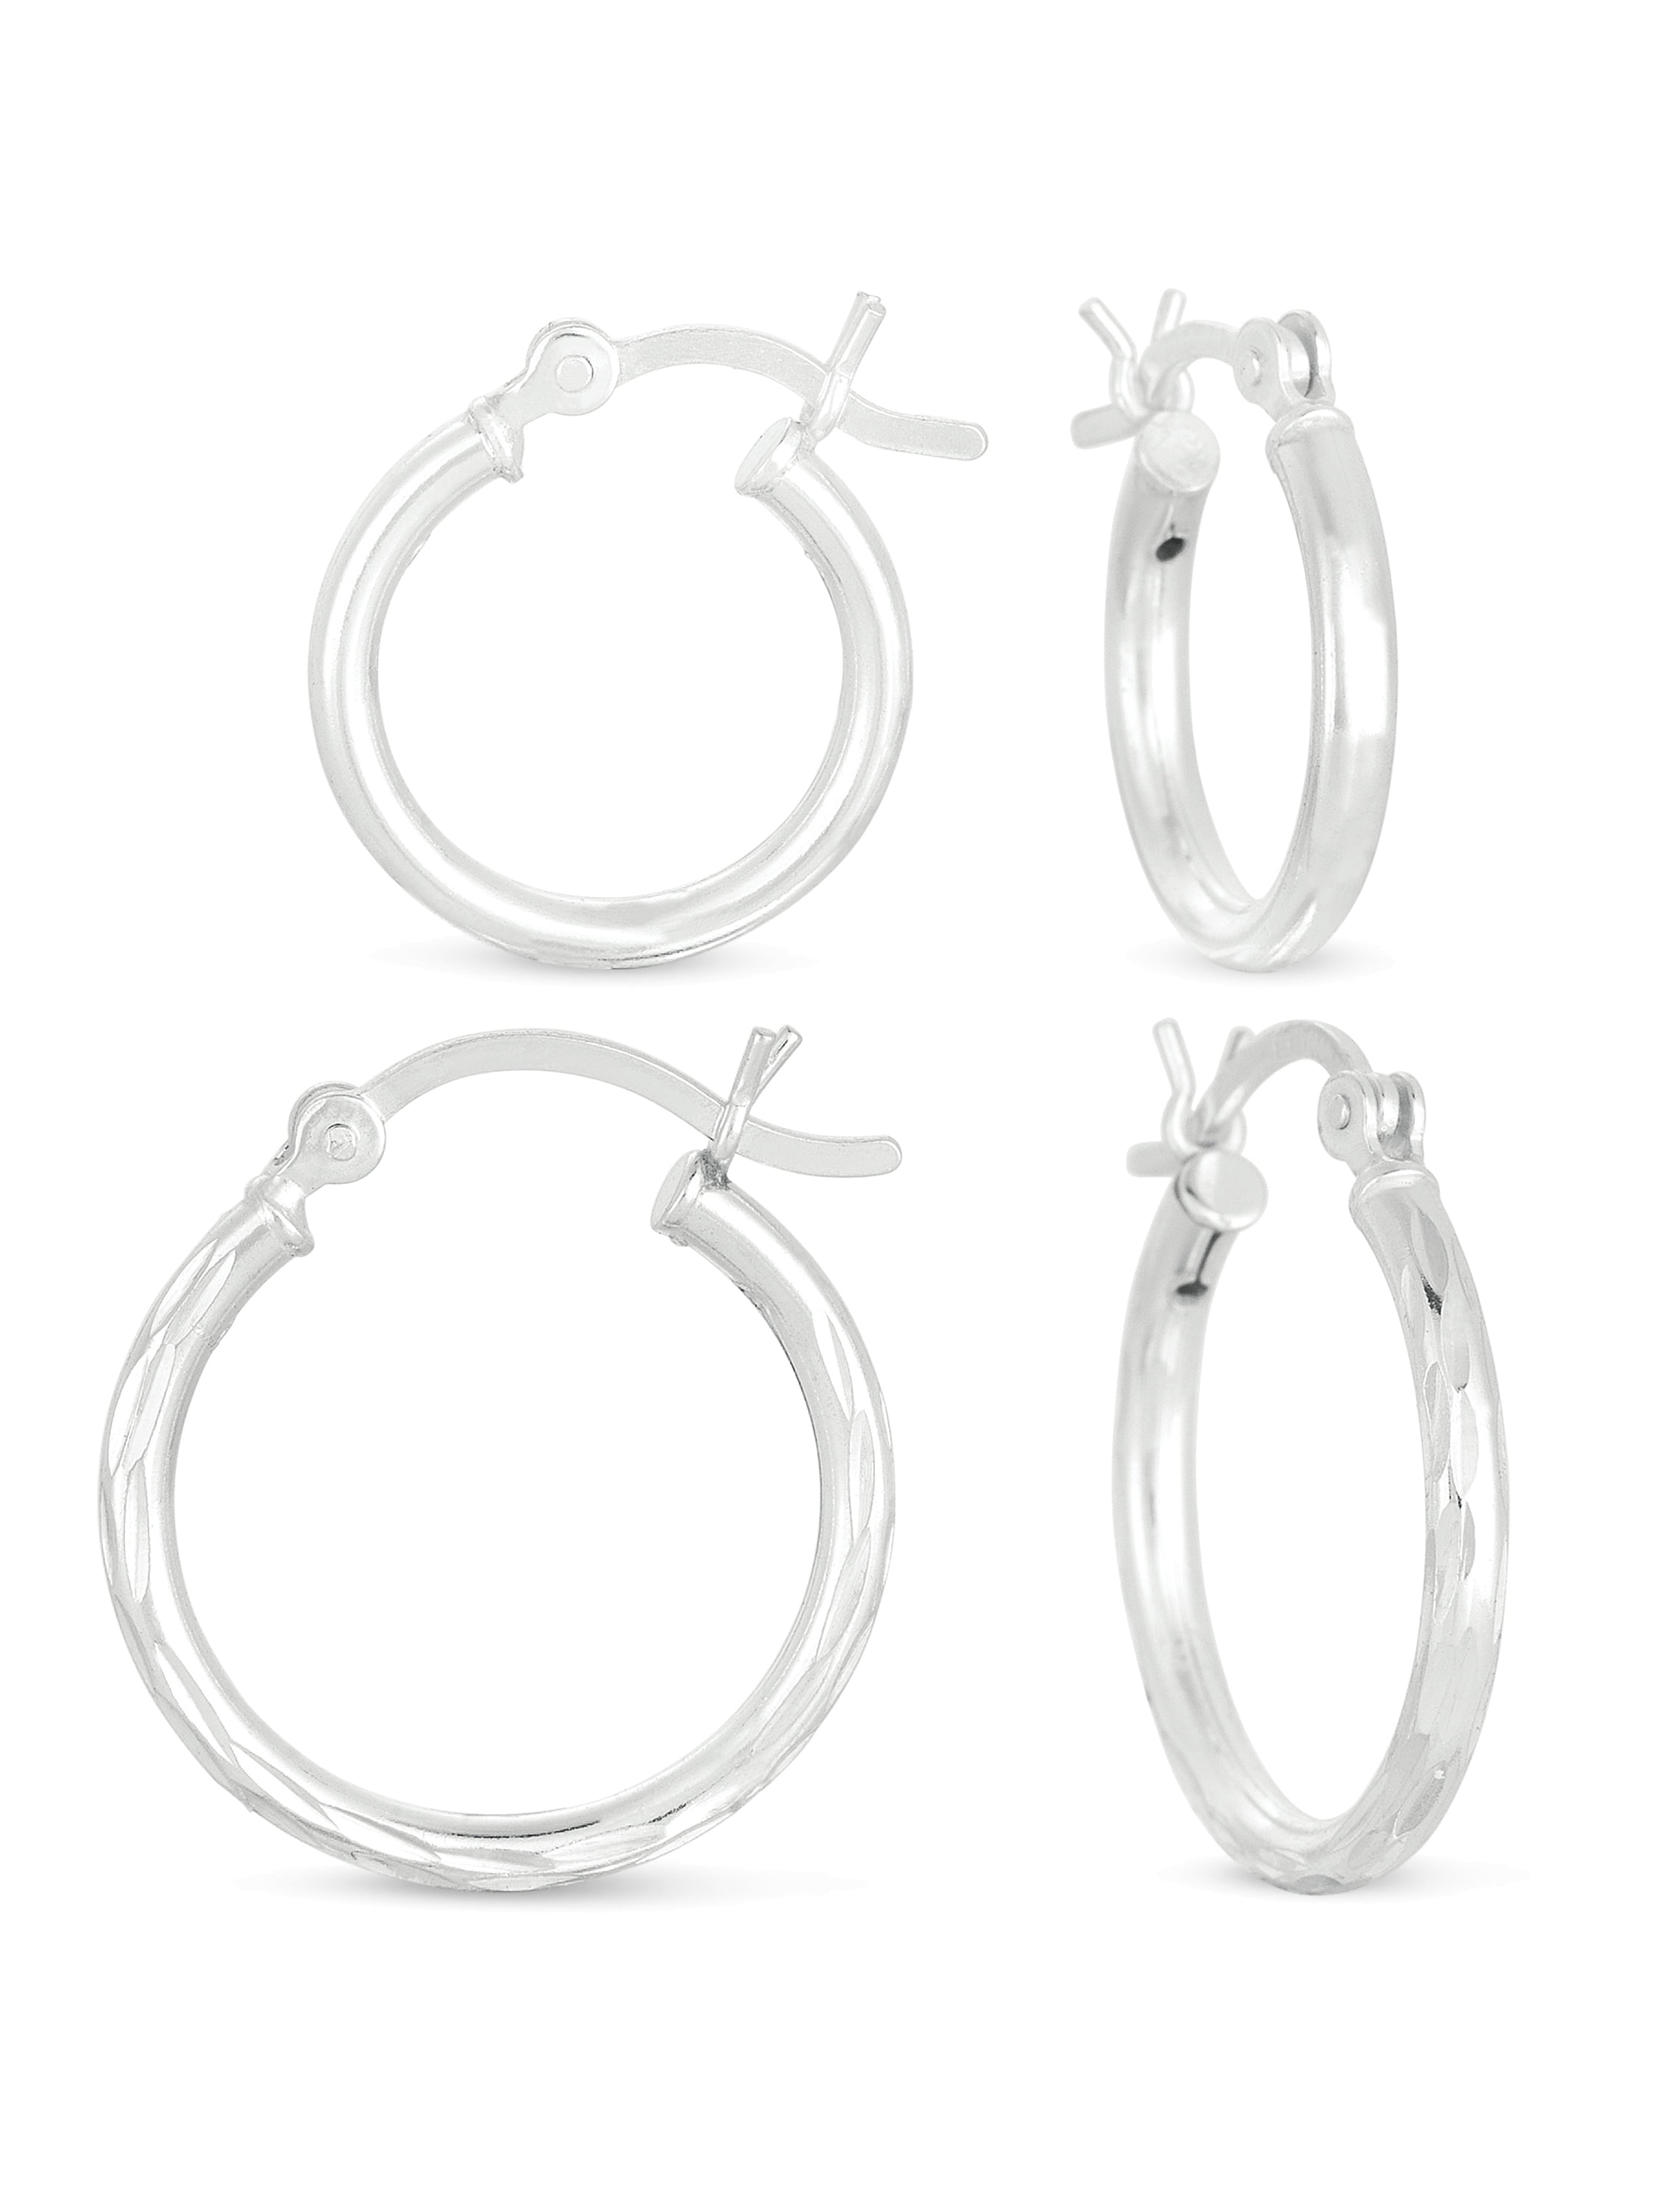 6 Pairs Women Girls Silver Tone Stainless Steel Large Hoop Earrings Gift Set 